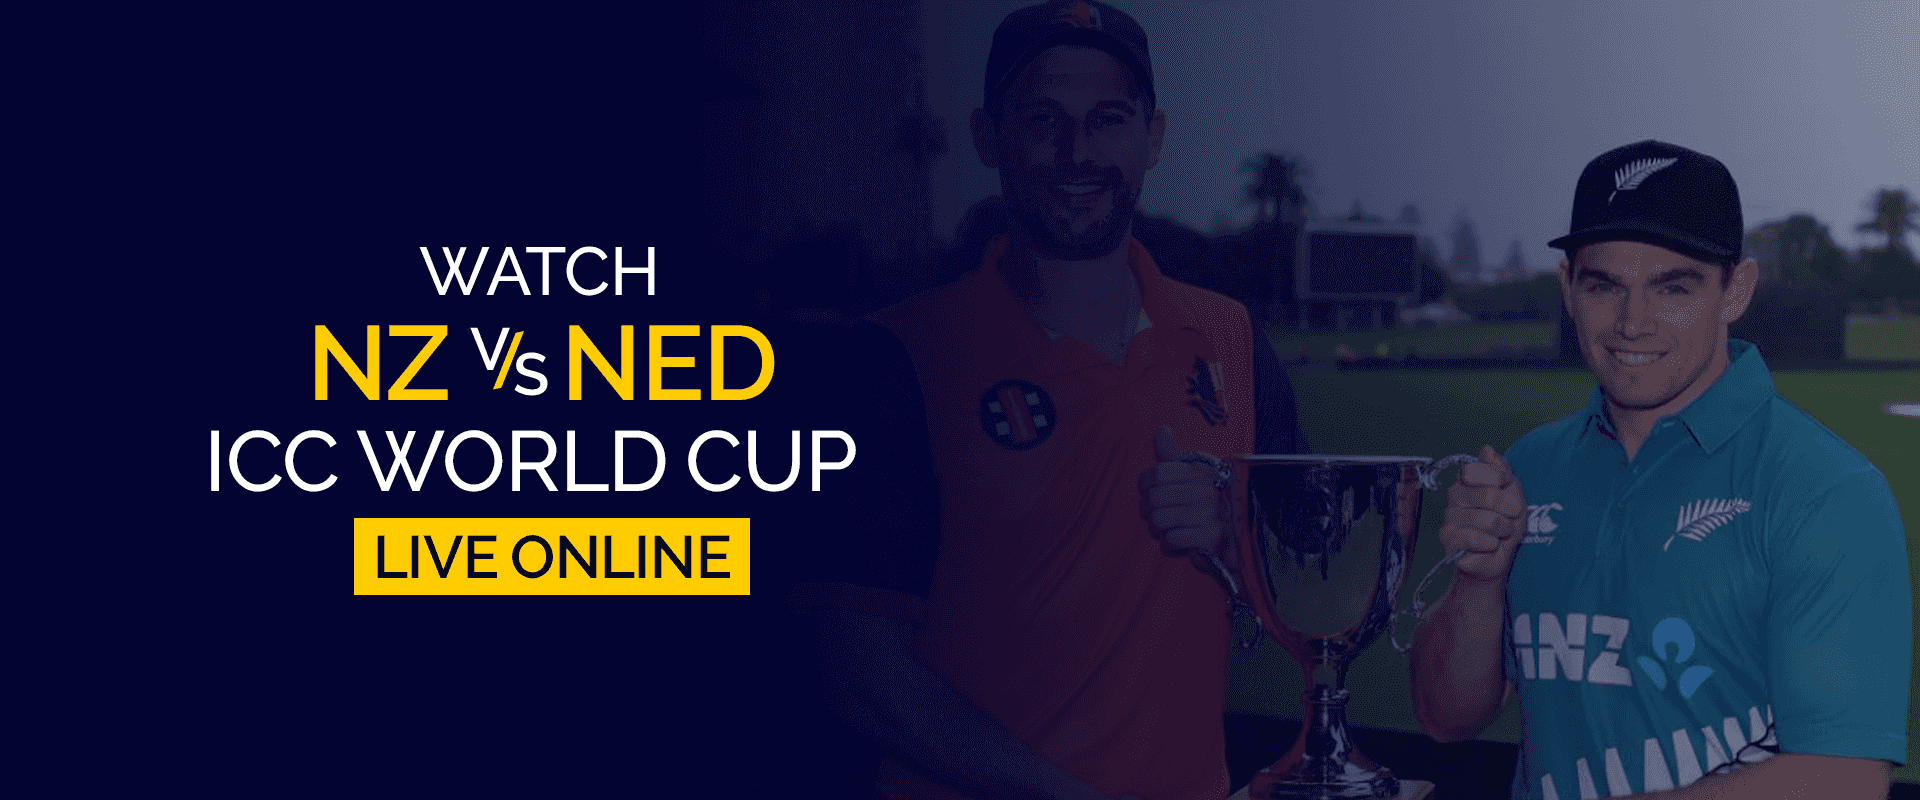 Regardez la Coupe du monde NZ vs NED ICC en direct en ligne